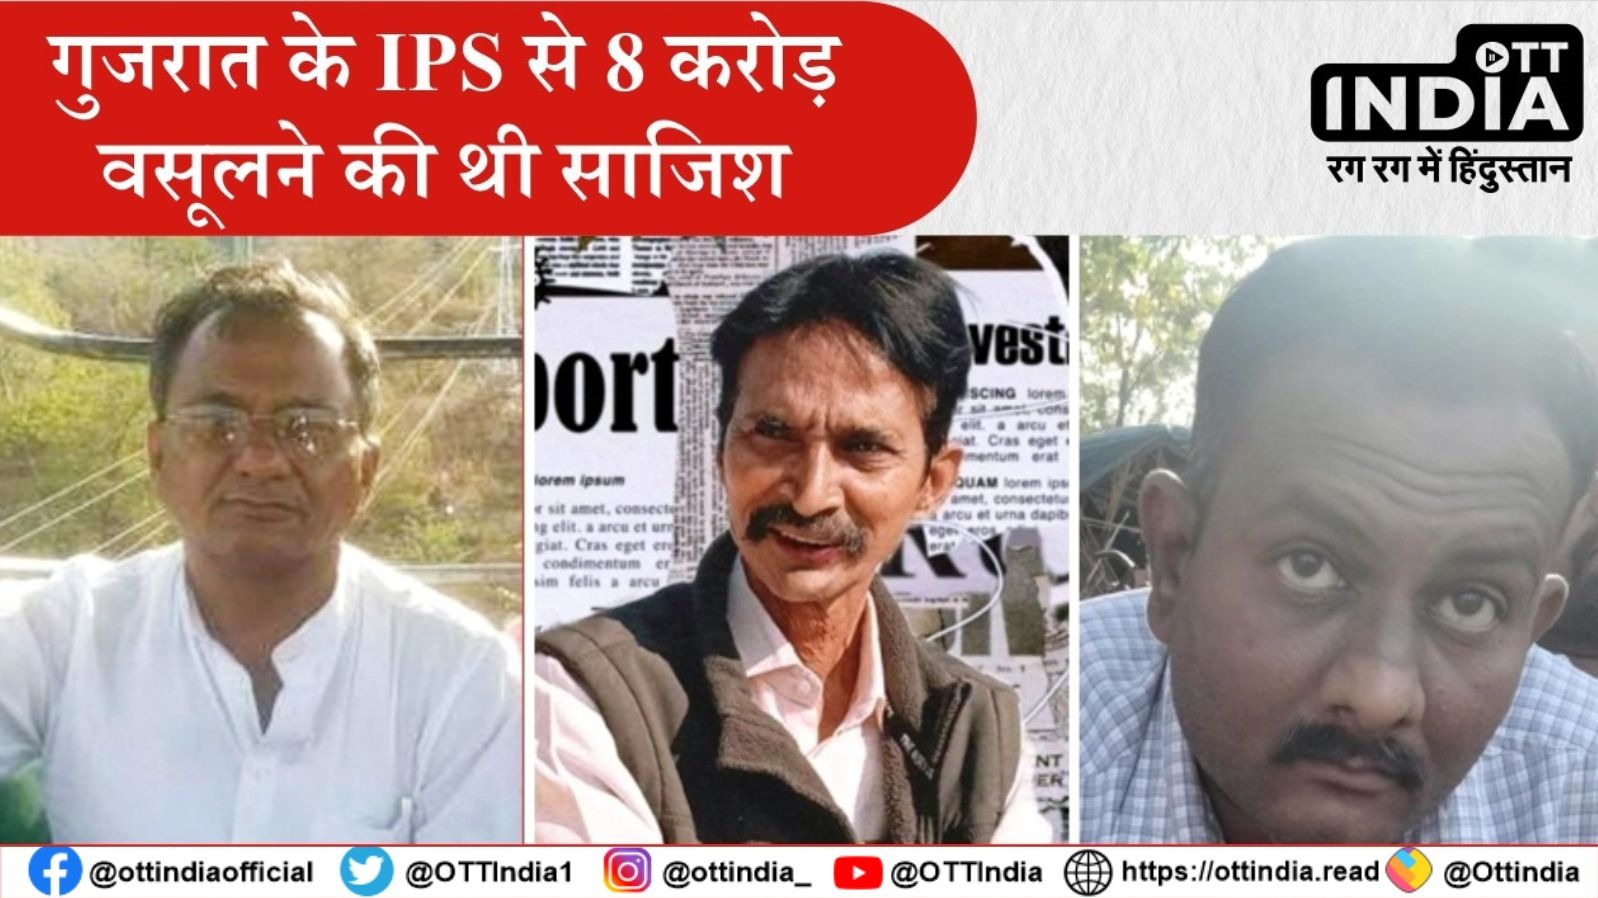 गुजरात के IPS से 8 करोड़ वसूलने की थी साजिश, भाजपा नेता और दो पत्रकारों समेत 5 गिरफ्तार